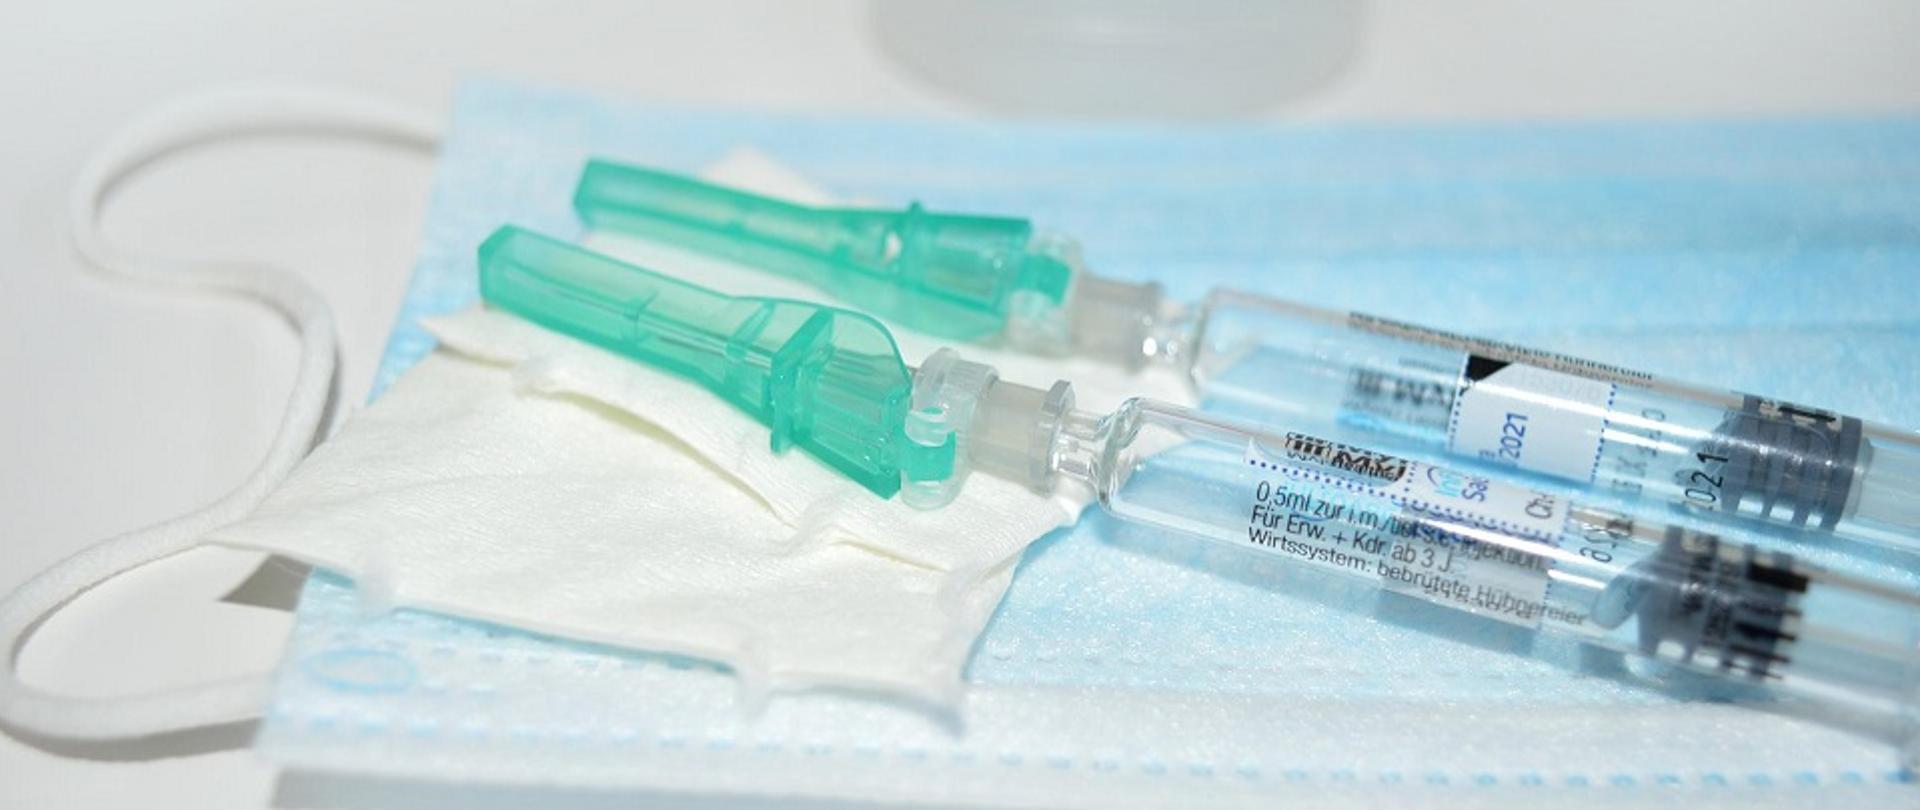 Dwie strzykawki z igłami ze szczepionkami leżące na wacikach i na maseczce ochronnej jednorazowej.